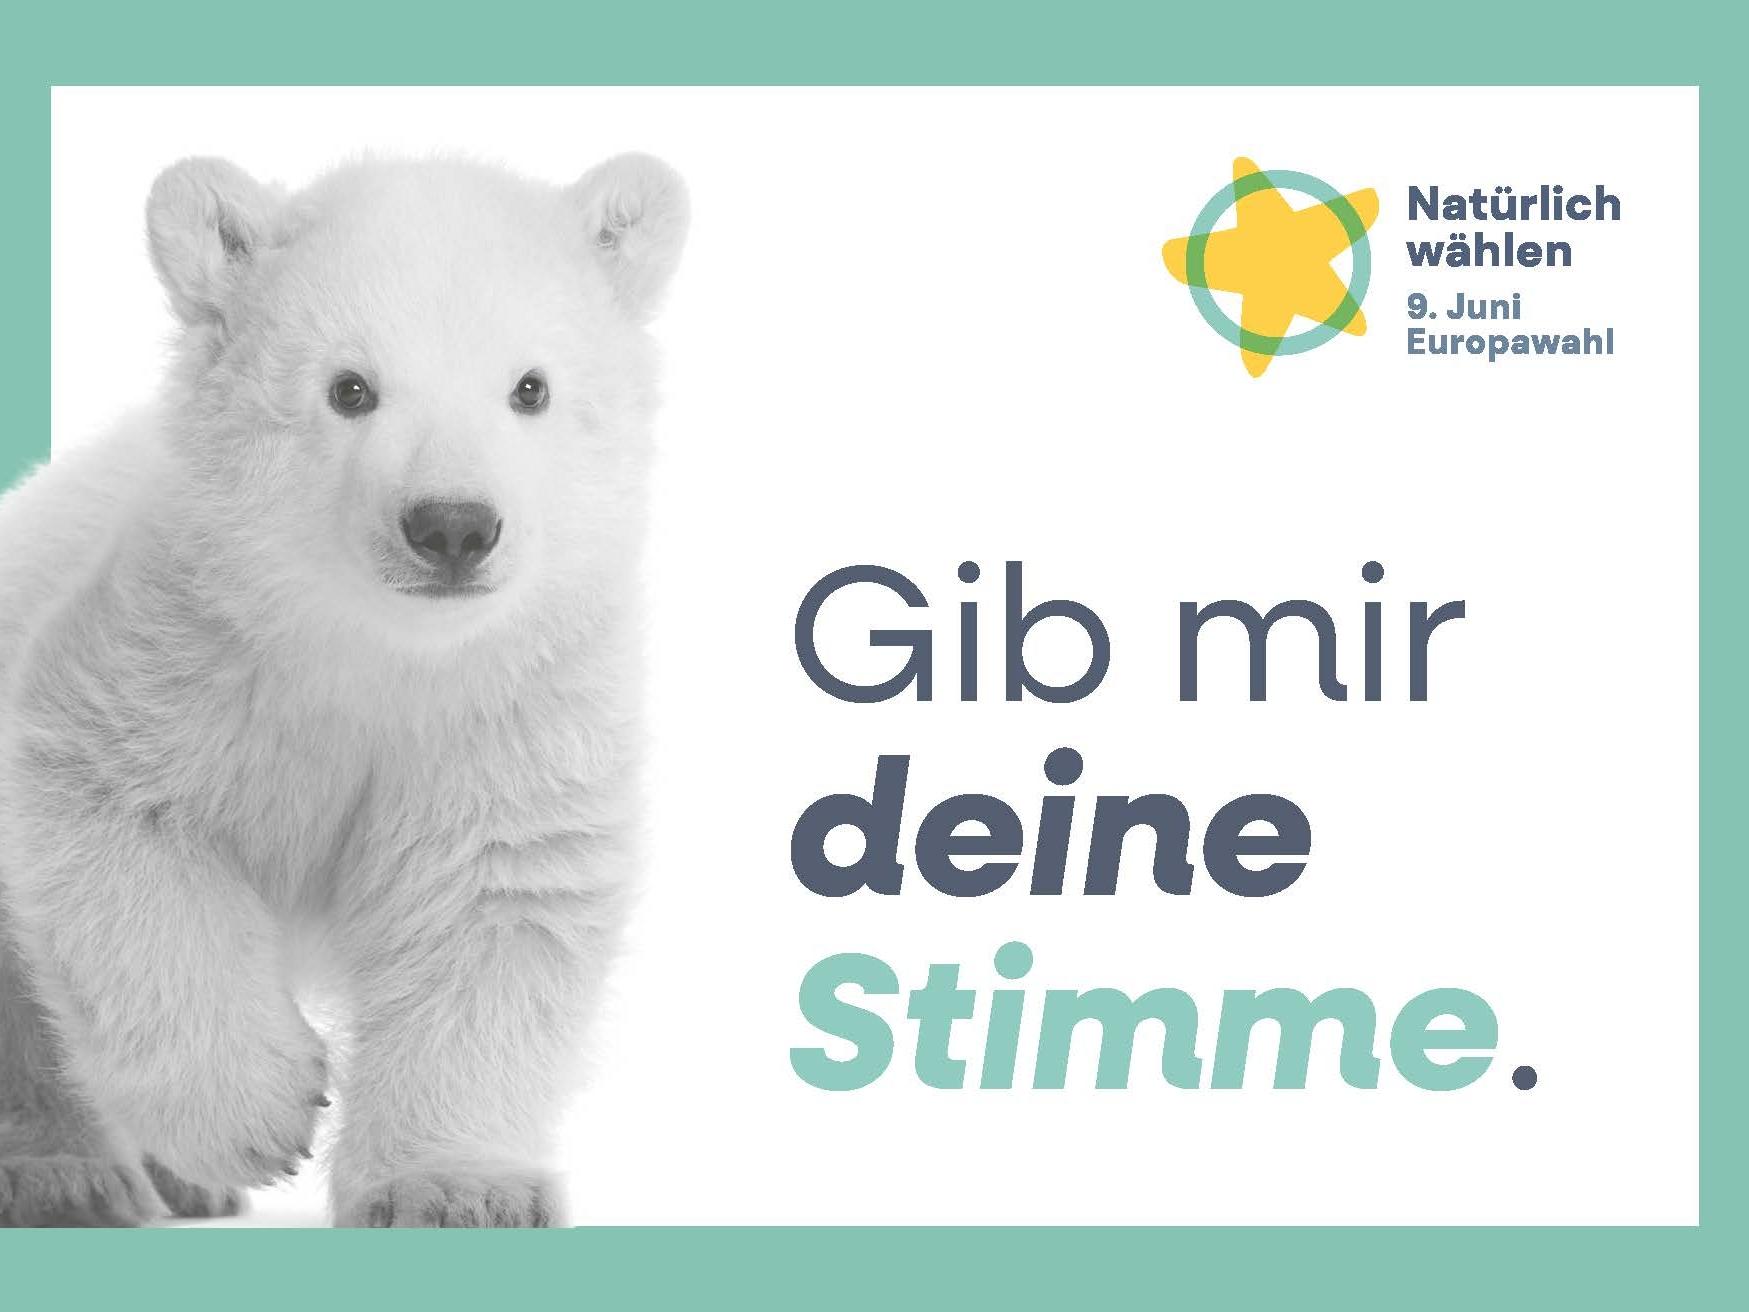 Europawahl Postkarte, Eisbär: "Gib mir deine Stimme."